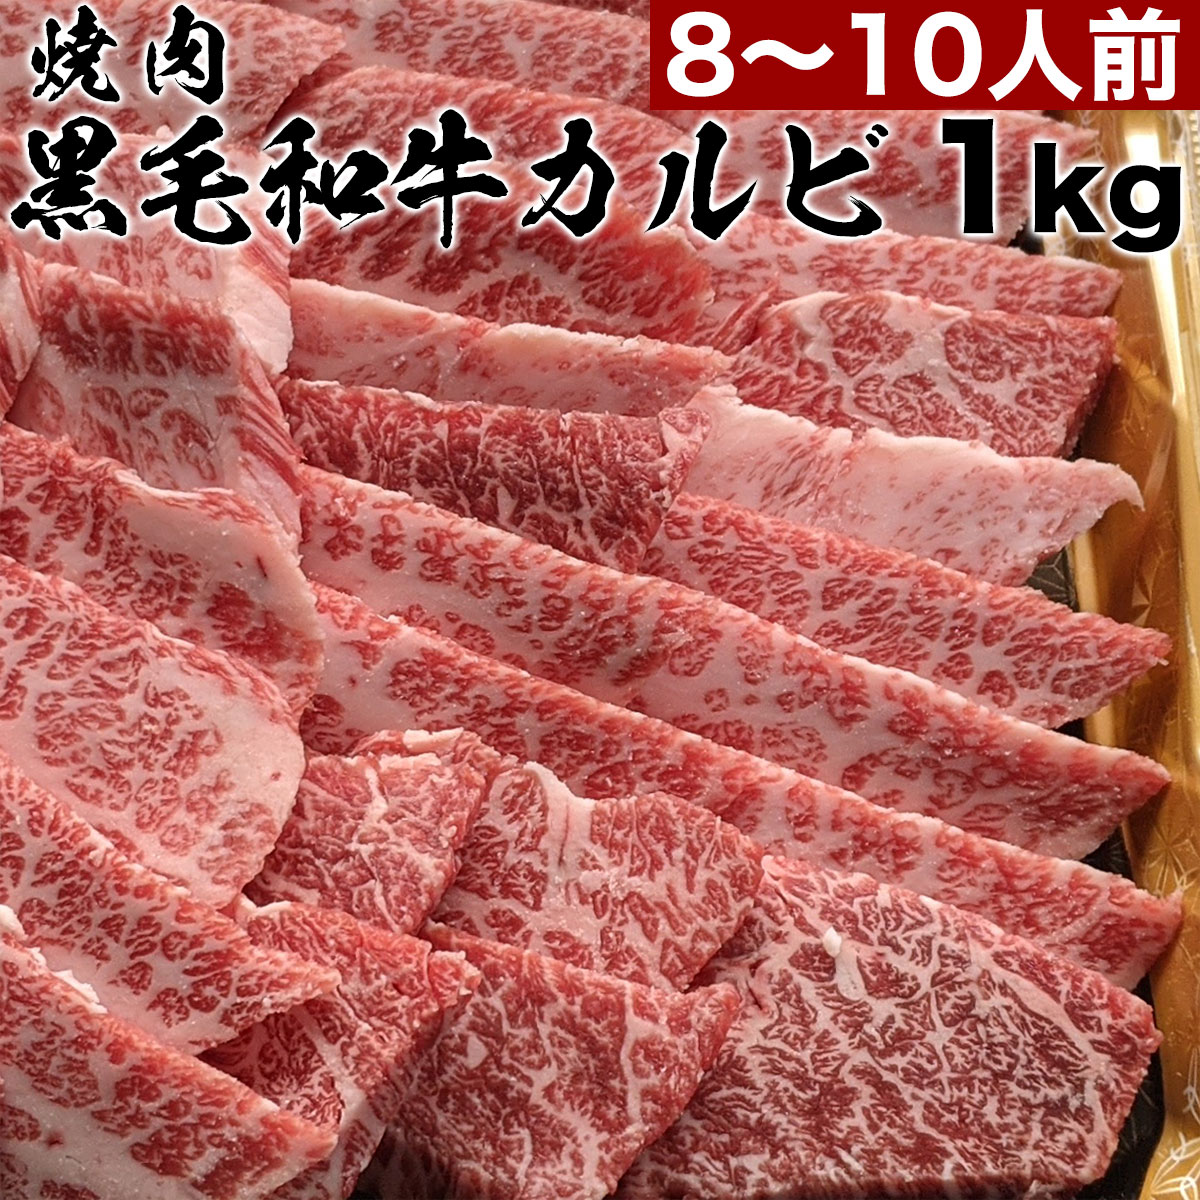 国産 肉 バーベキューセット 焼き肉 焼肉（BBQ バーべキュー）2kg 約８〜１０人前 牛肉 豚肉 鶏肉 送料無料 (沖縄・北海道は別途送料要)  通販